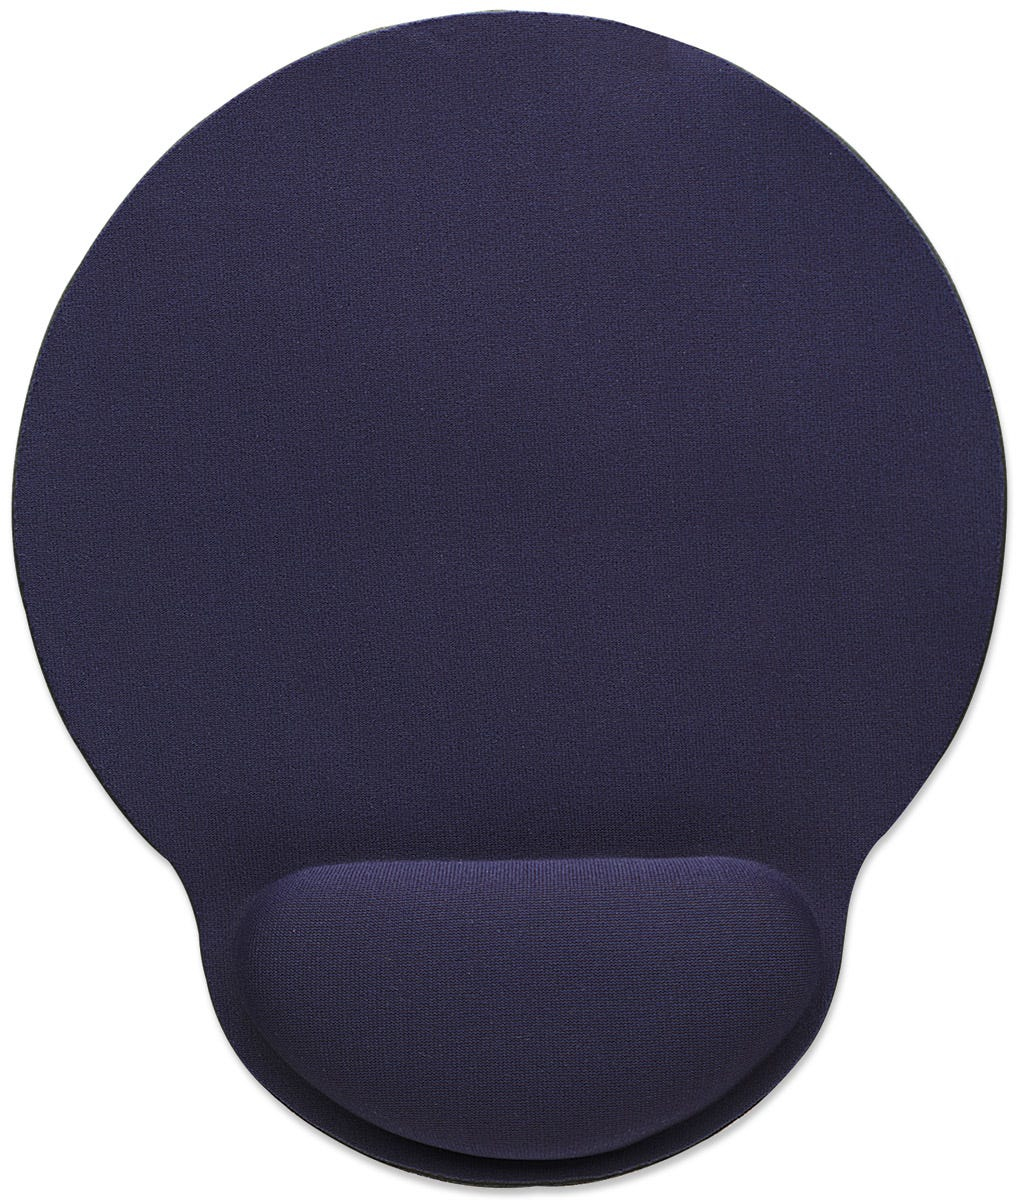 434386 manhattan Wrist Gel Pad Mouse Mat, Blue - NA01